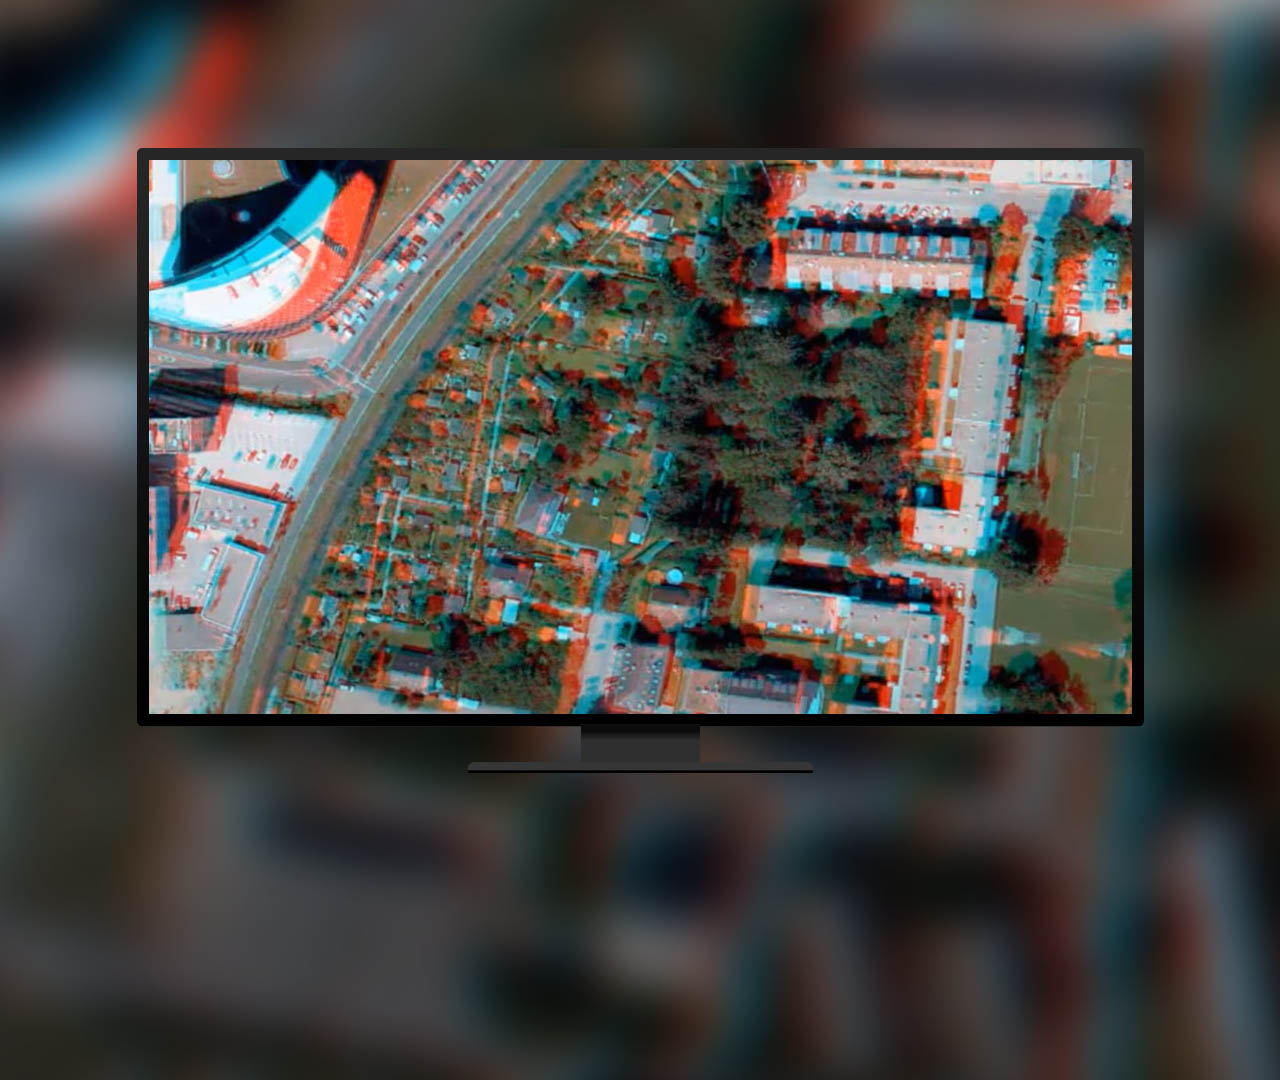 Una vista aérea de un edificio con halos de color azul y rojo que utiliza las capacidades de visualización estereoscópica